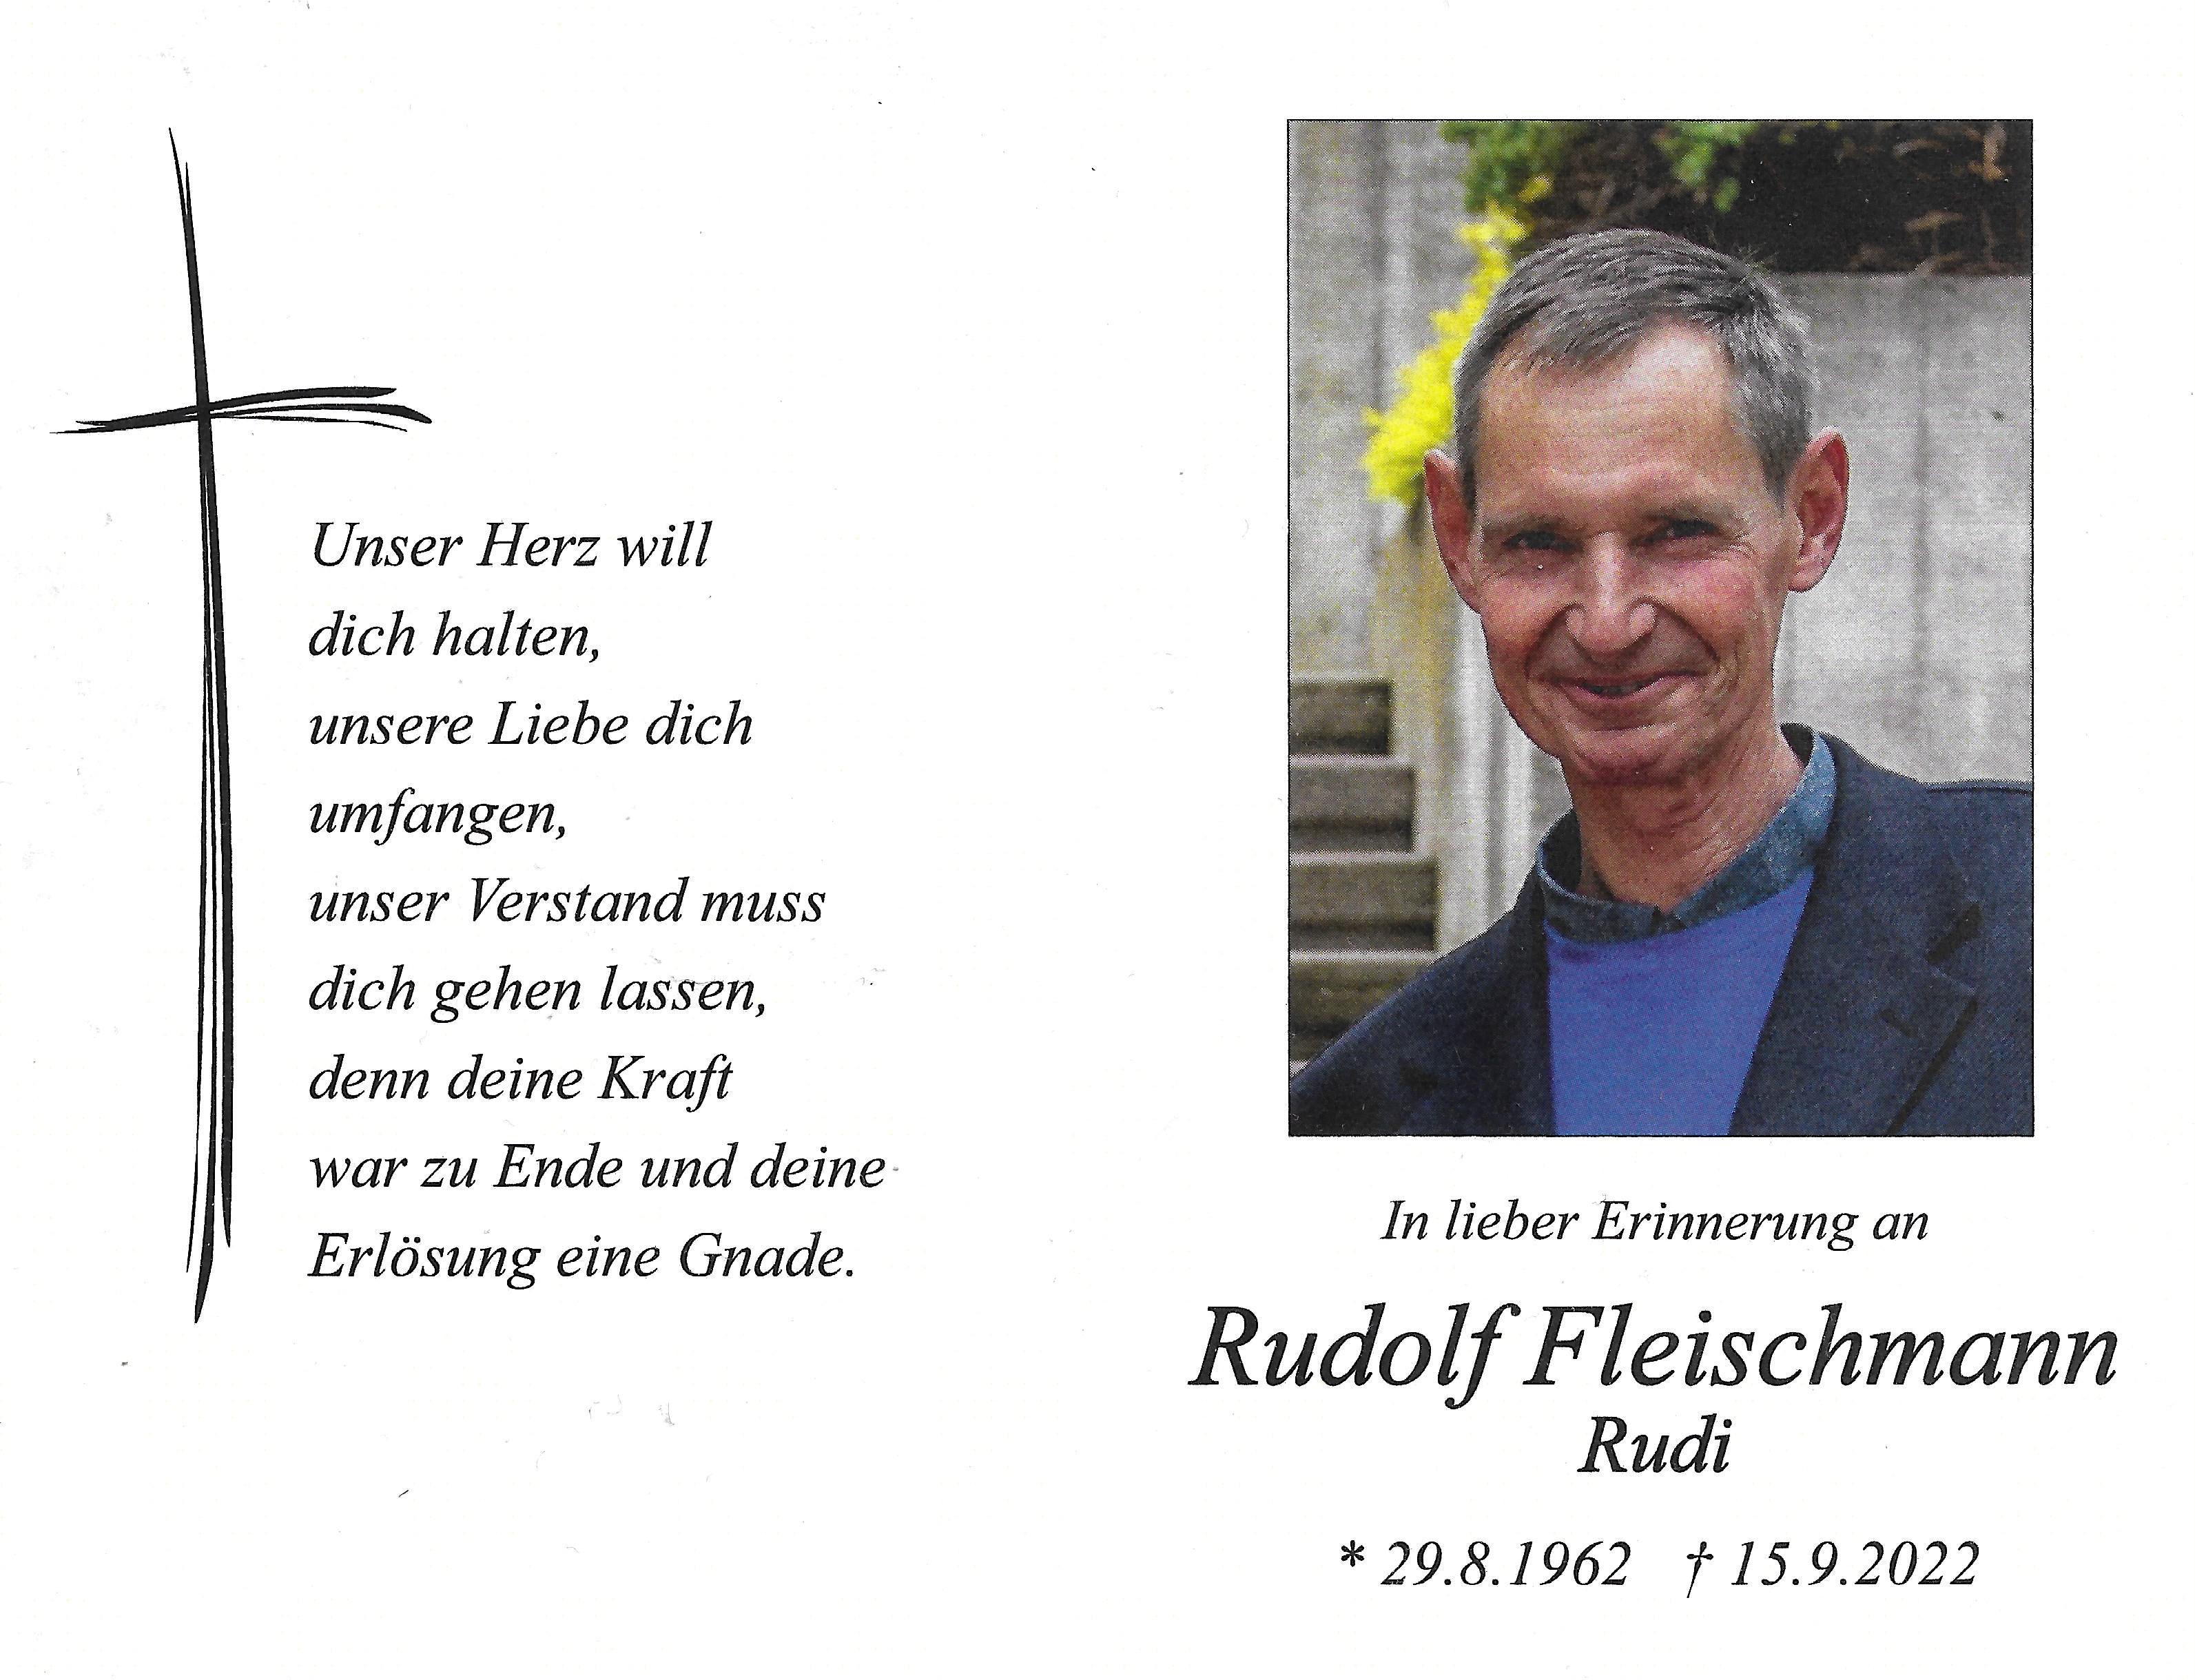 Rudolf Fleischmann